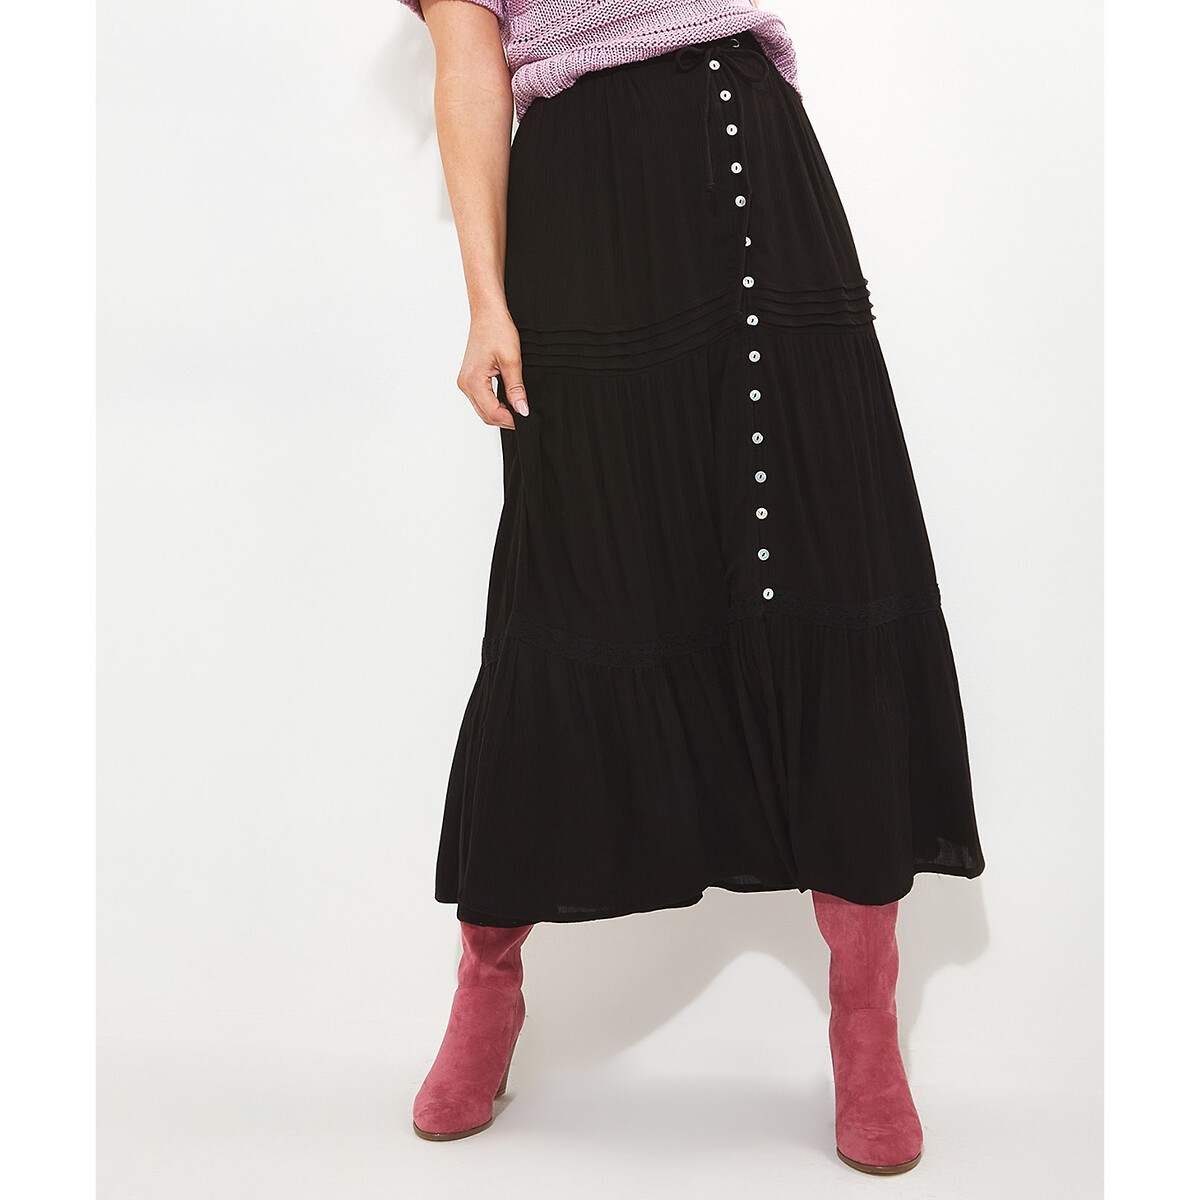 Юбка длинная с воланом 42 (FR) - 48 (RUS) черный юбка длинная с асимметричной баской жаккардовая ткань 42 fr 48 rus розовый